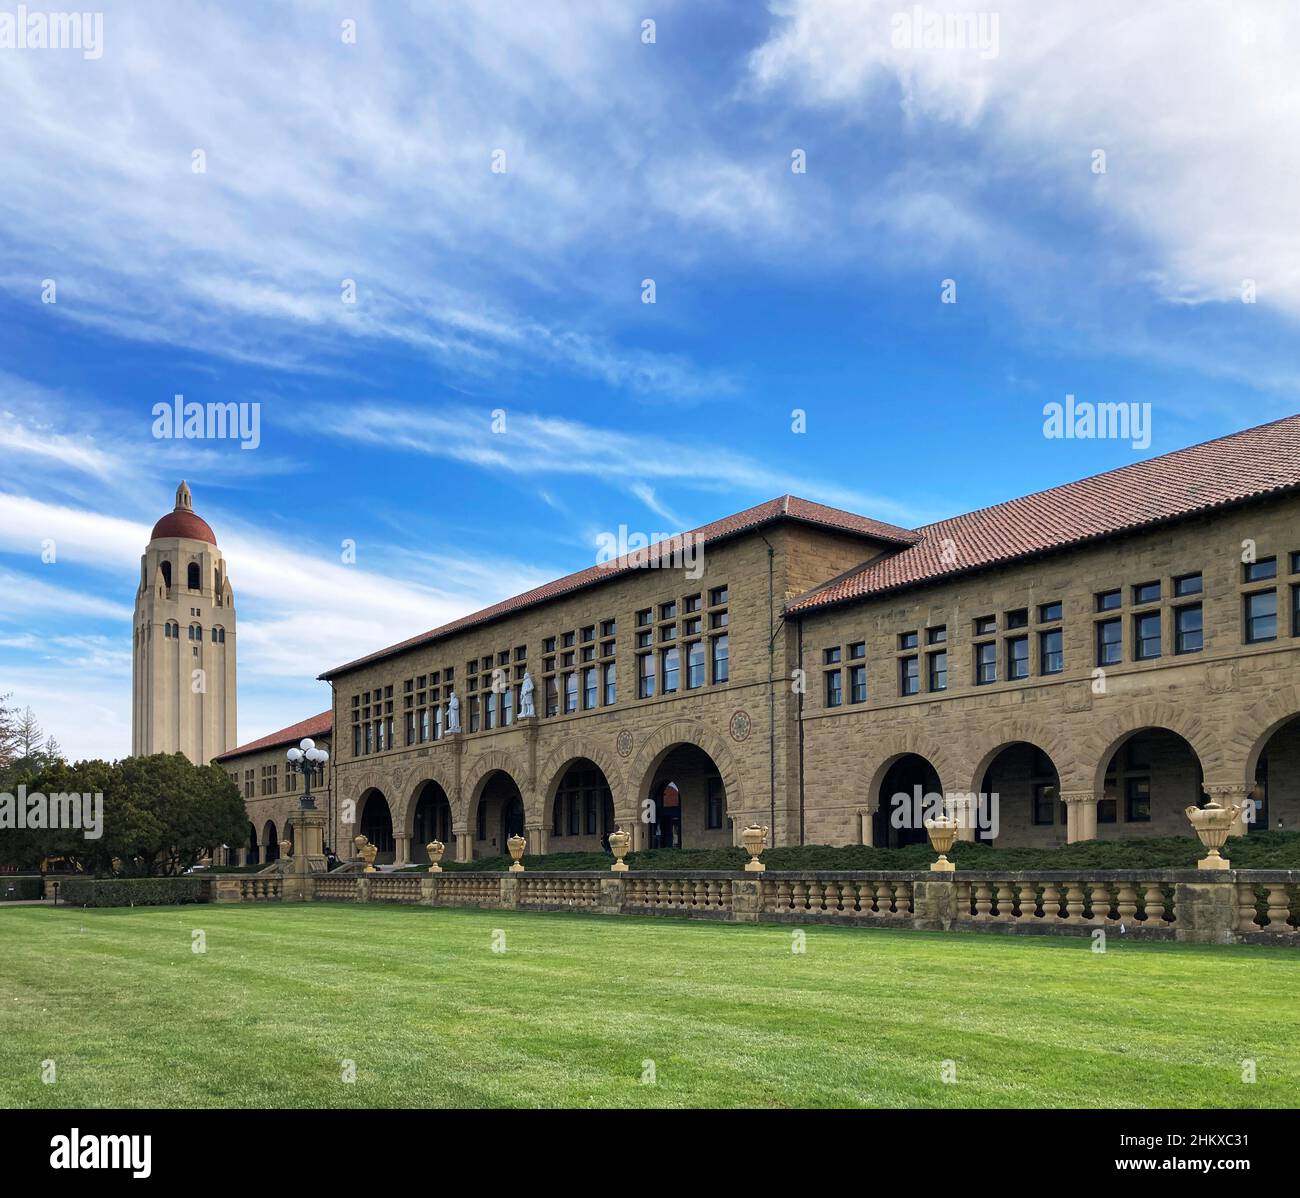 Tour Hoover et Lane History Corner immeuble situé sur le magnifique campus de l'université de Stanford sous un ciel bleu - Palo Alto, Californie, Etats-Unis - 2022 Banque D'Images